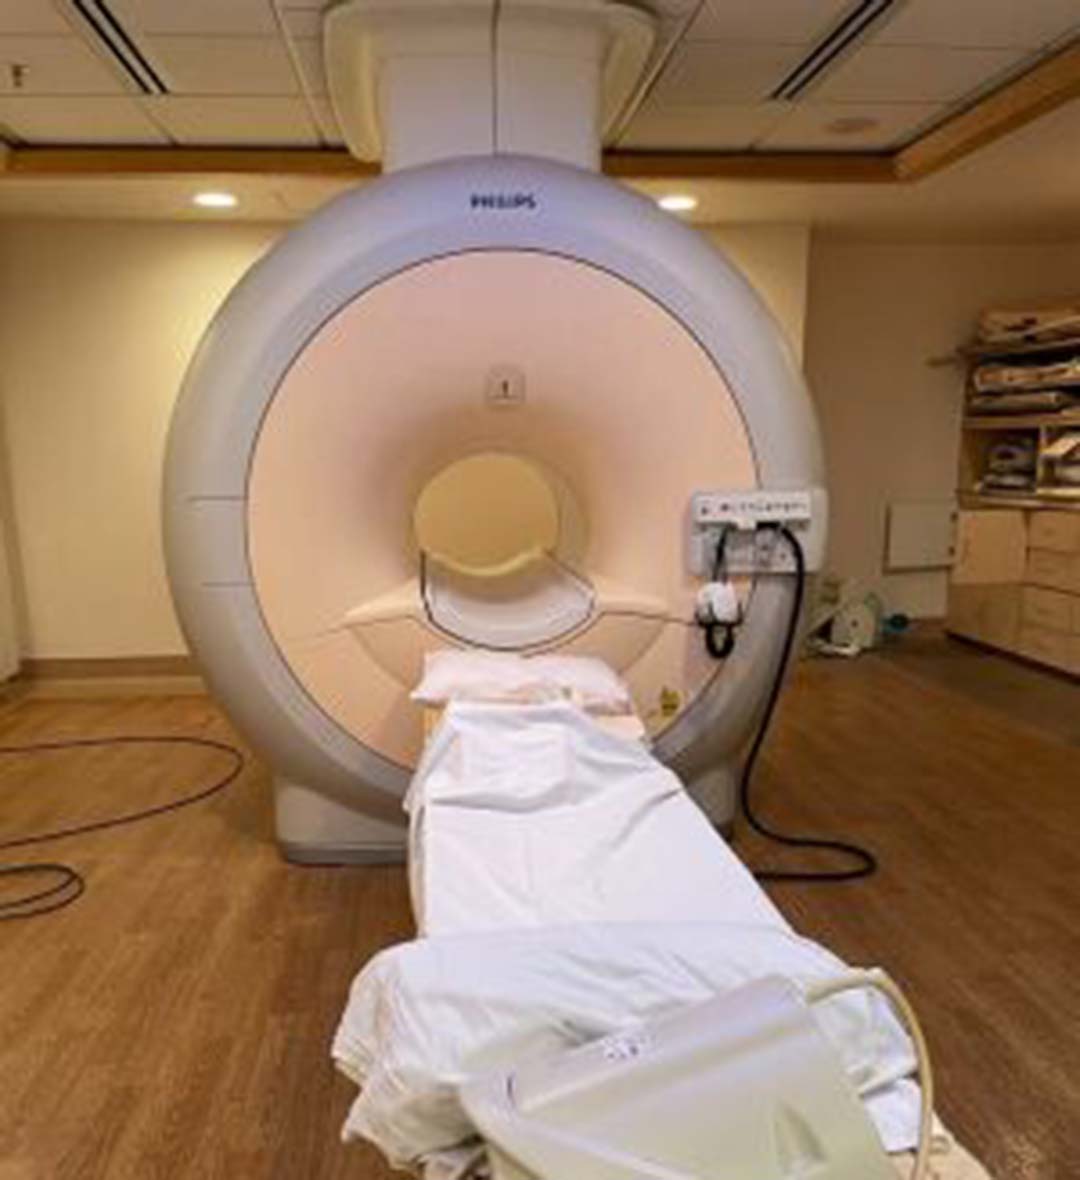 2005 Philips Achieva 1.5T MRI System